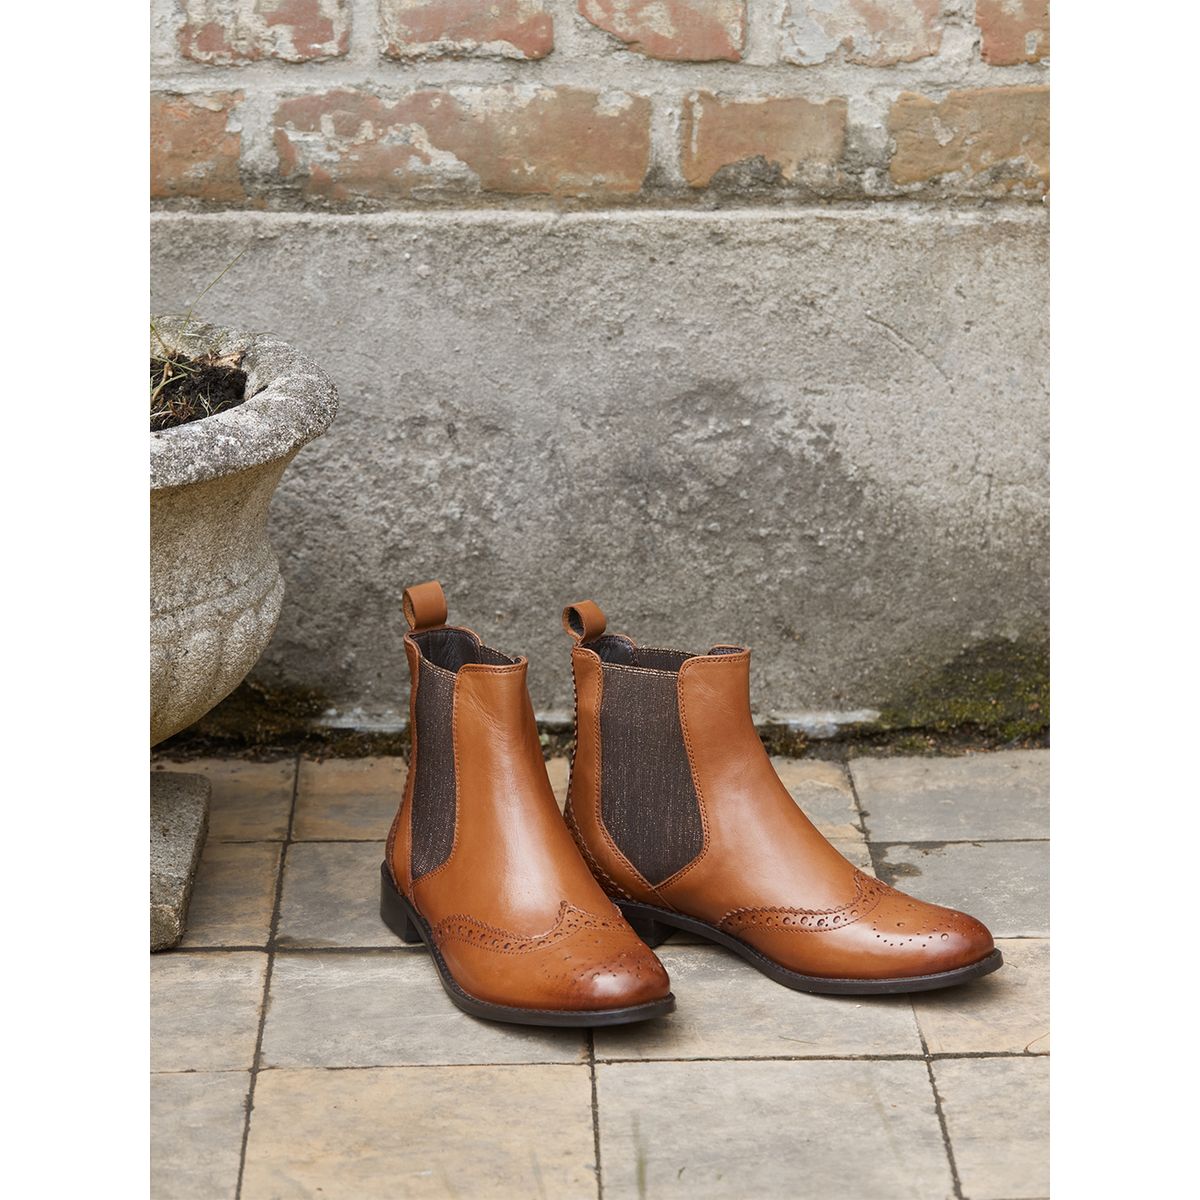 La Redoute Chaussures Bottes Bottines Boots zippés en cuir imprimé 